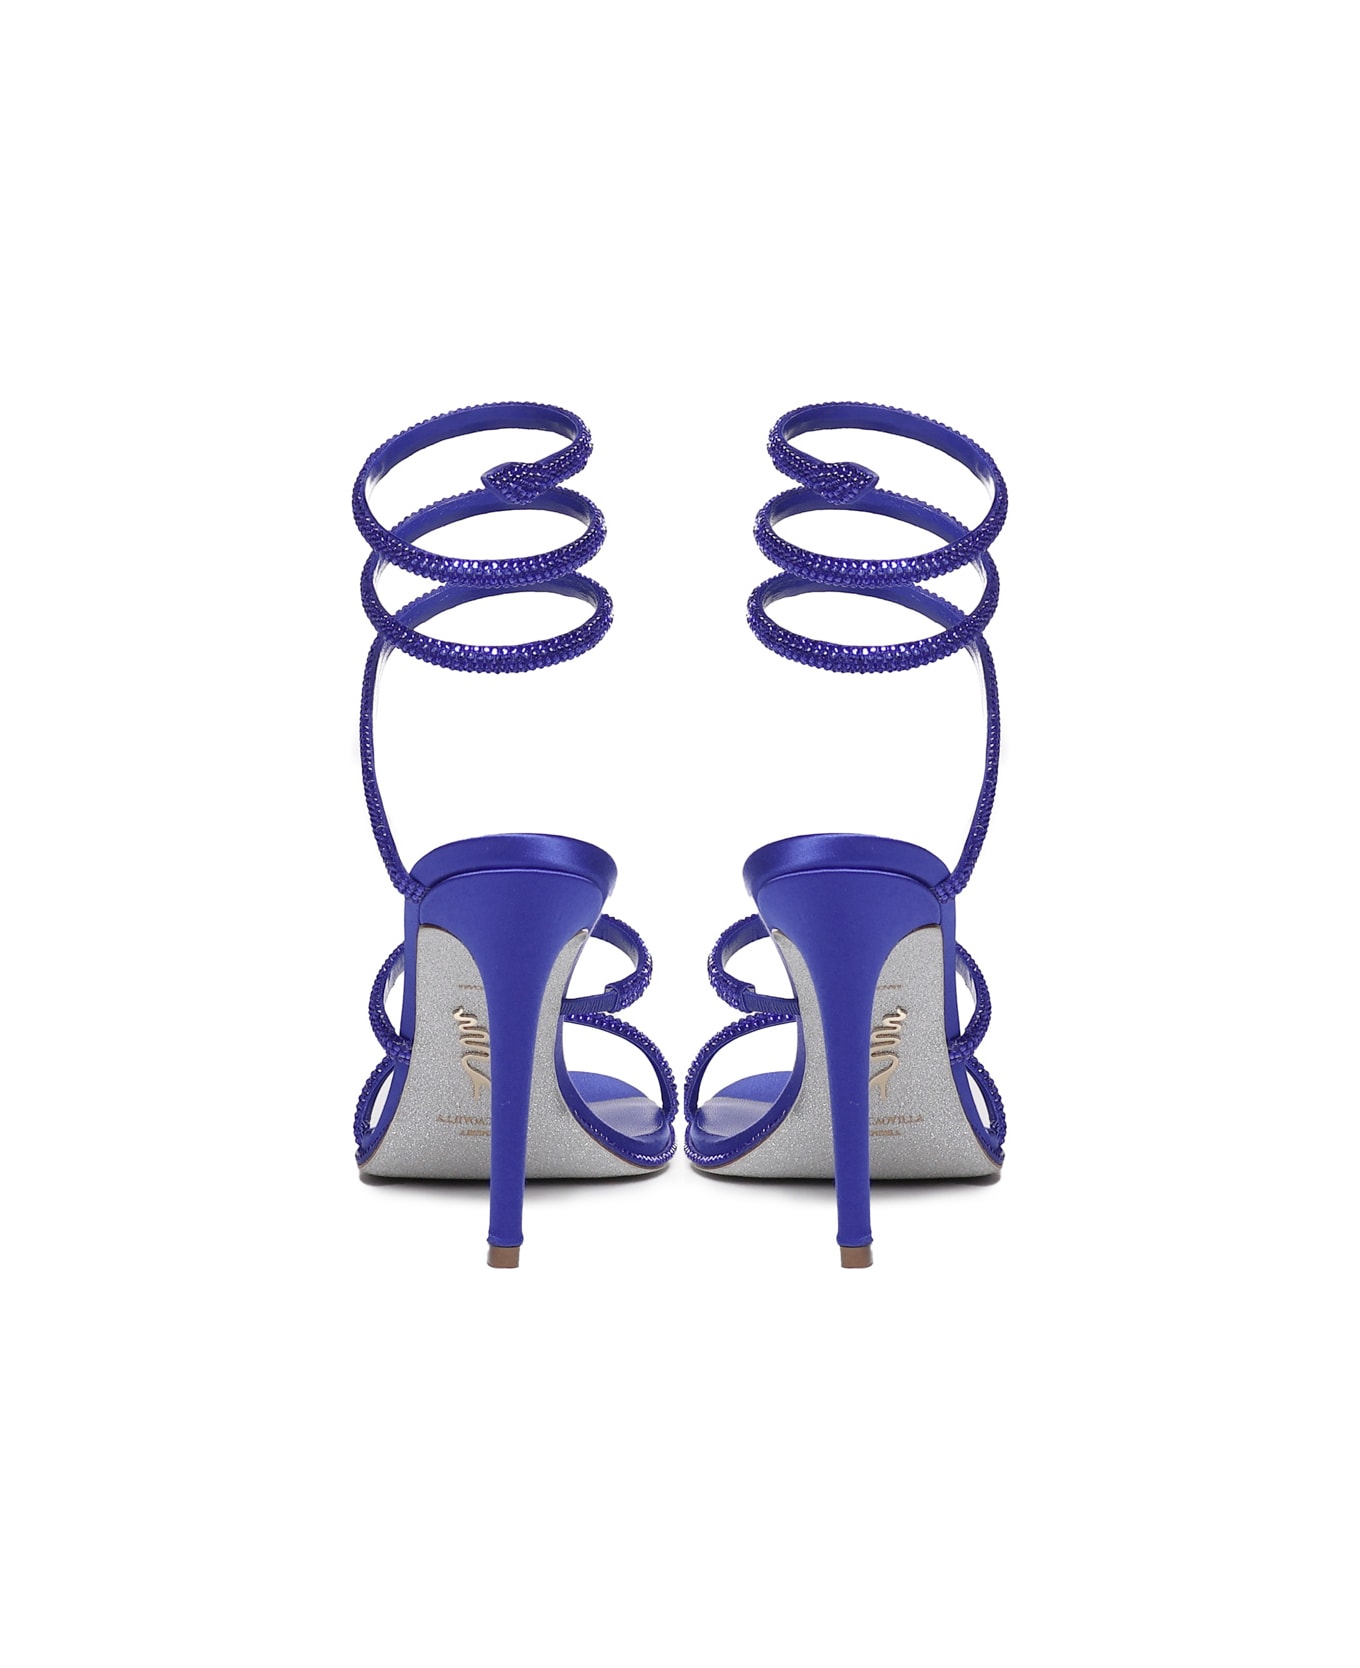 René Caovilla Cleo Sandals In Calfskin - Bluette satin